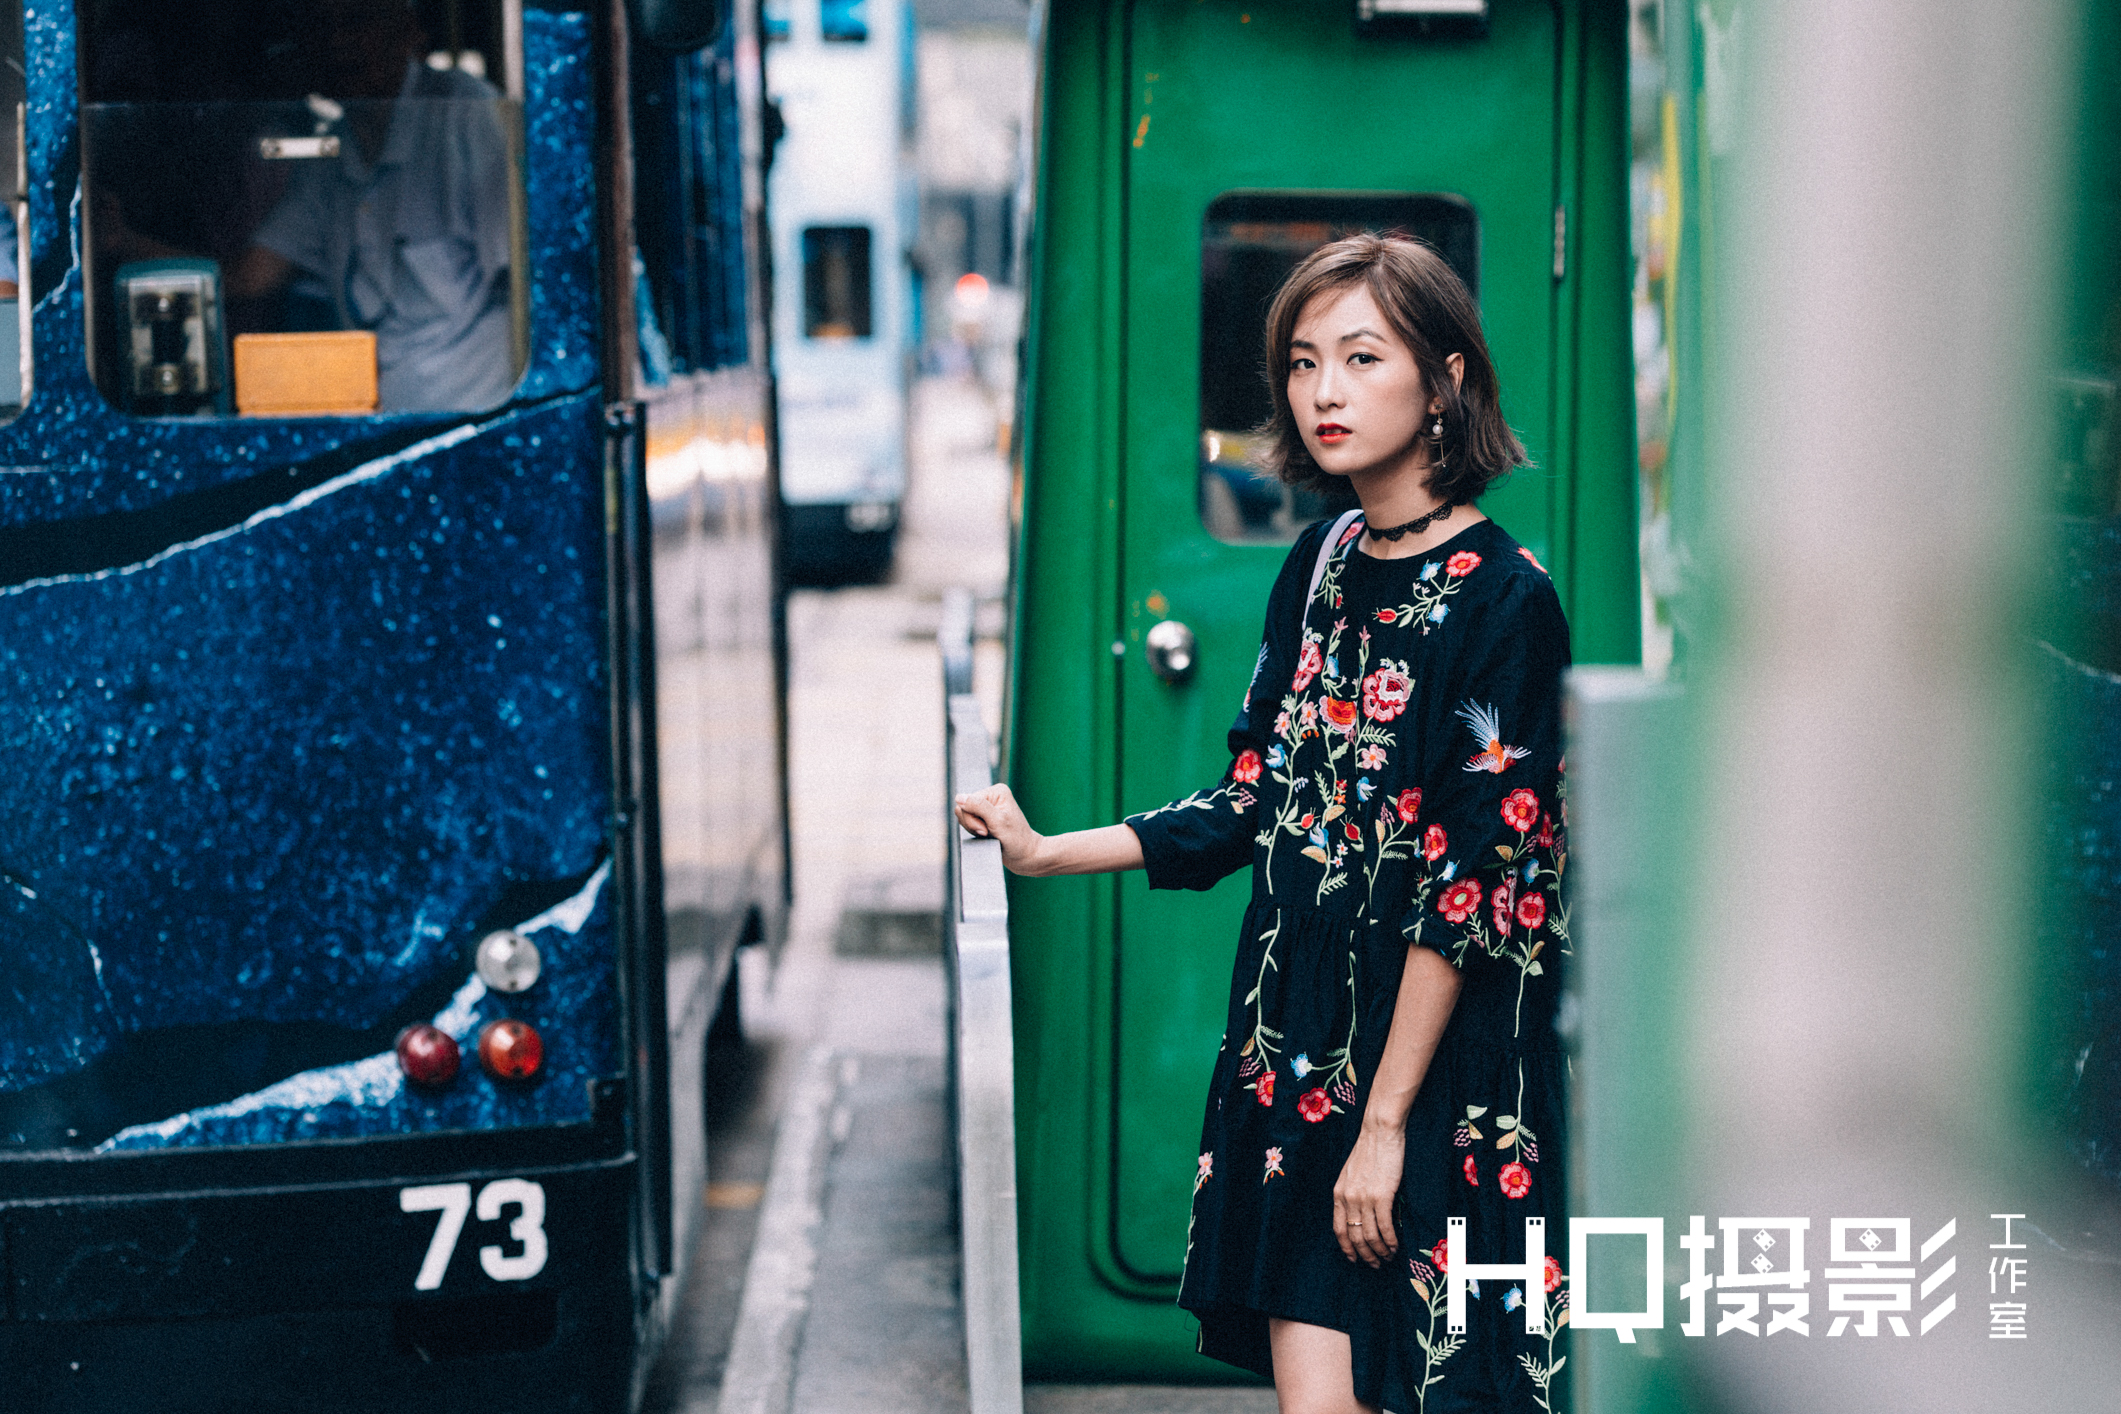 Matt HC Leung攝影師工作紀錄: 上環電車人像拍攝